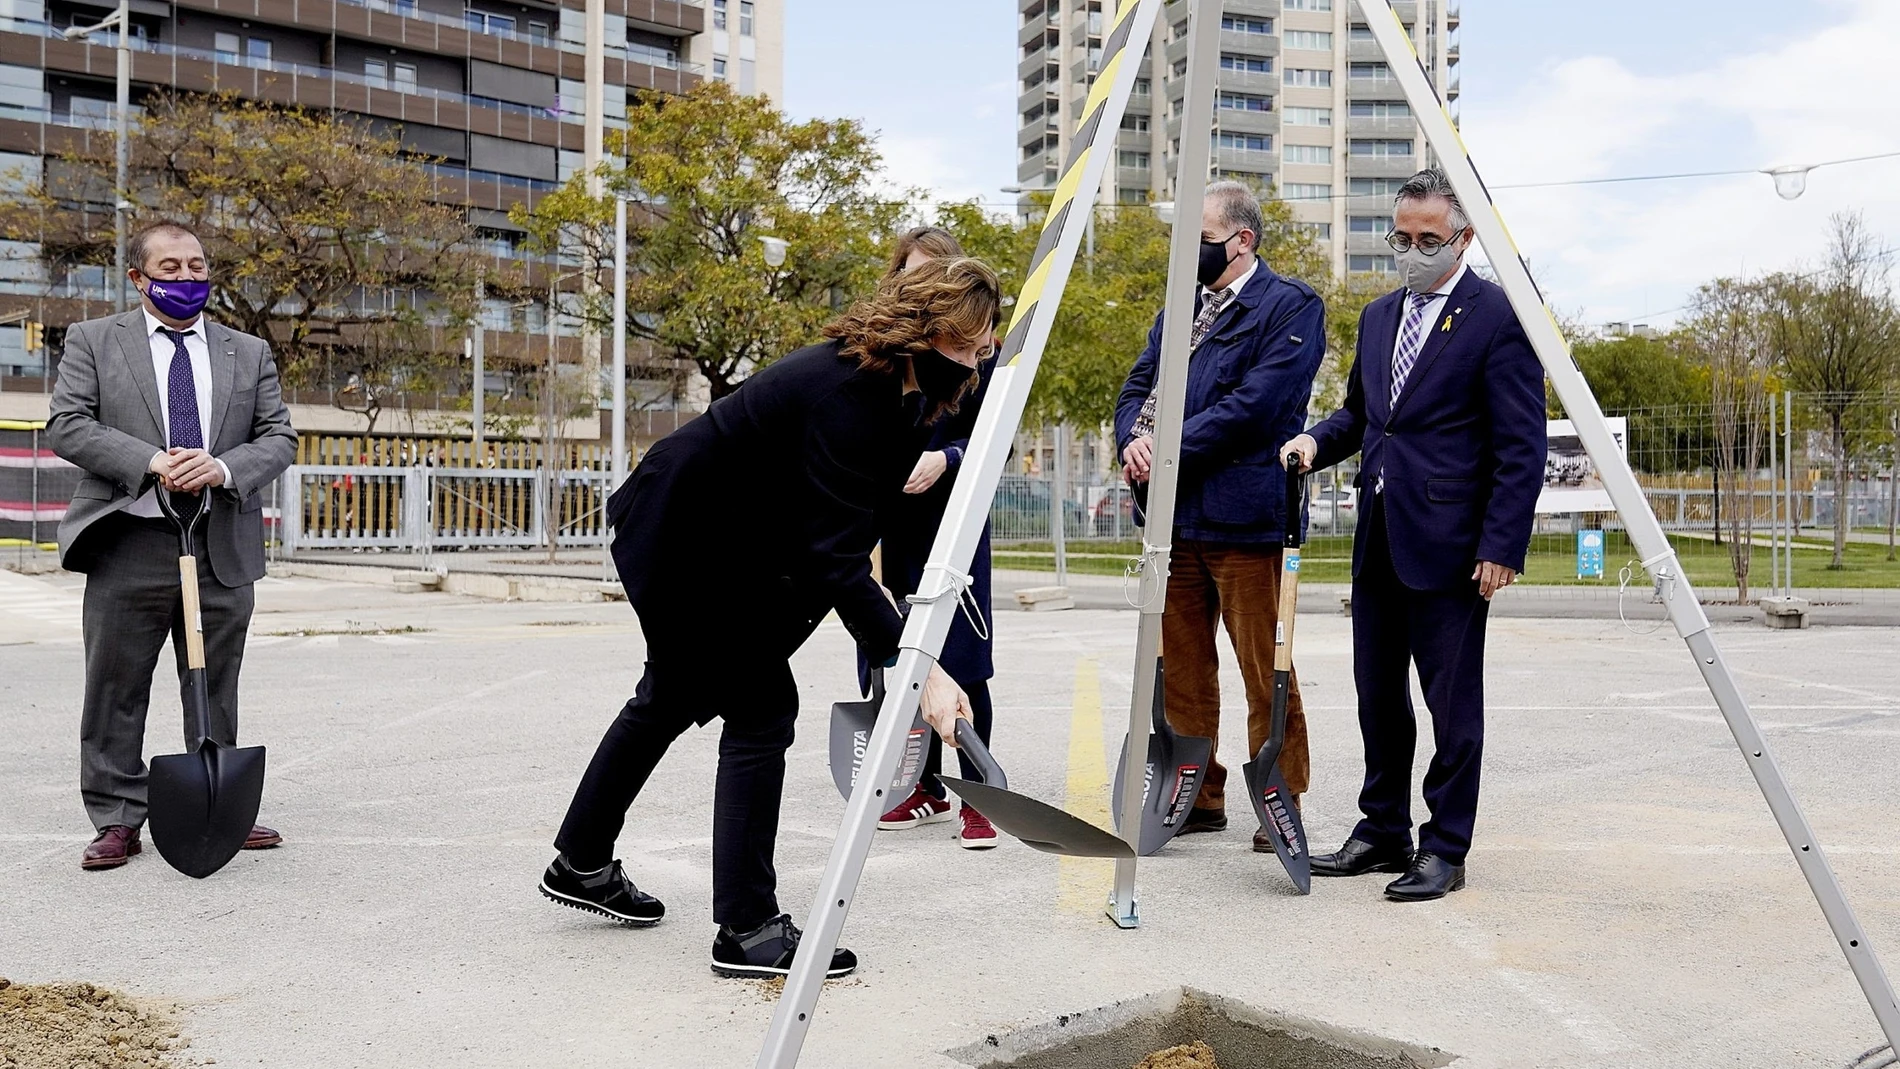 Acto de colocación de la primera piedra del edificio para pymes del Campus Diagonal-Besòs de Barcelona